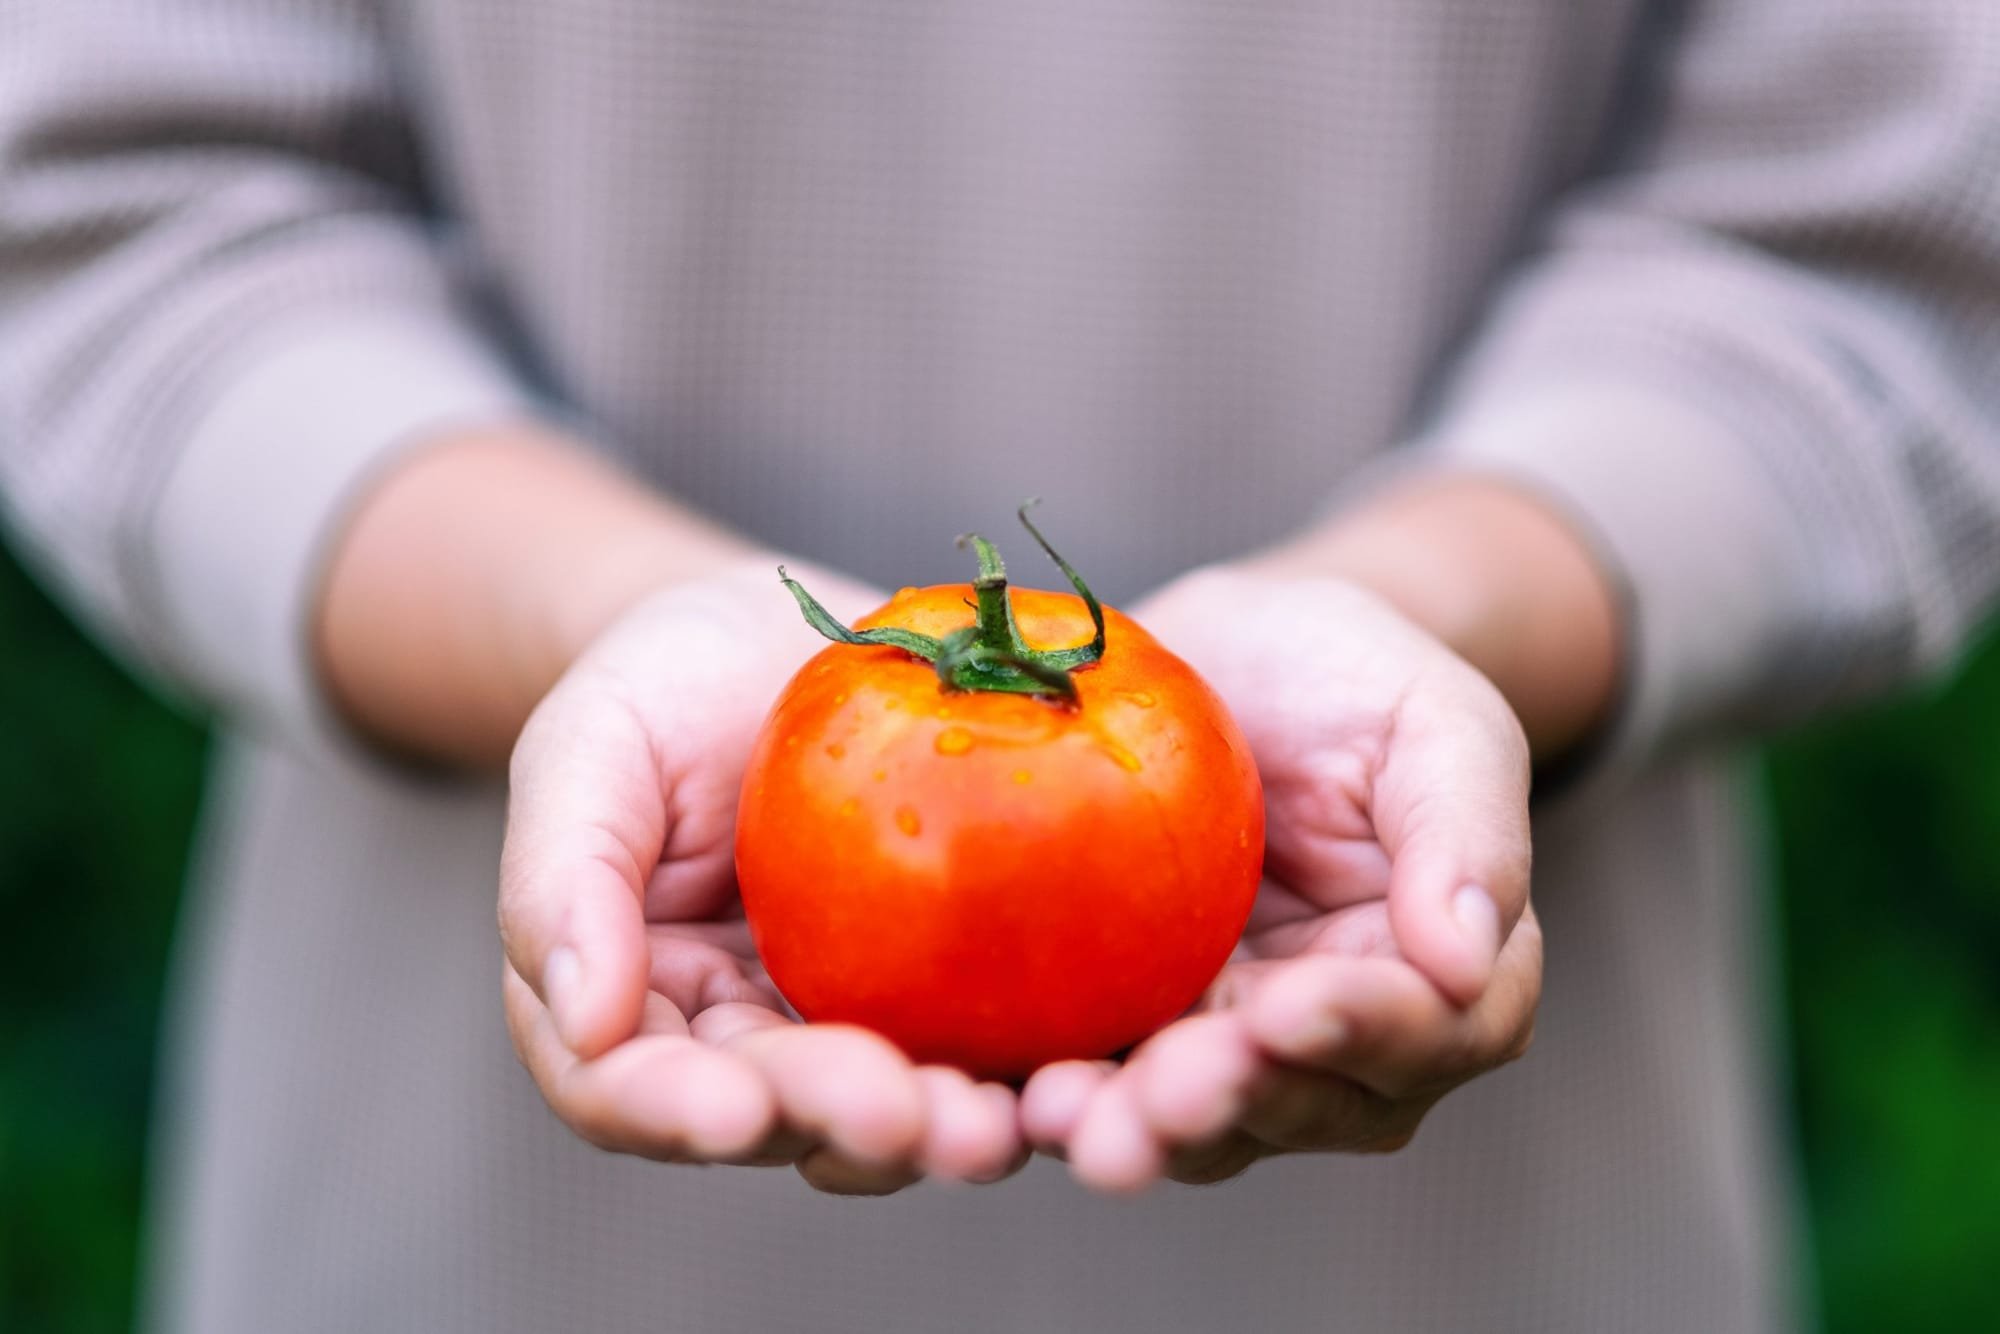 أطعمة صحية مفيدة للرجال والنساء فوق سن الأربعين.. أبرزها الطماطم والشوفان